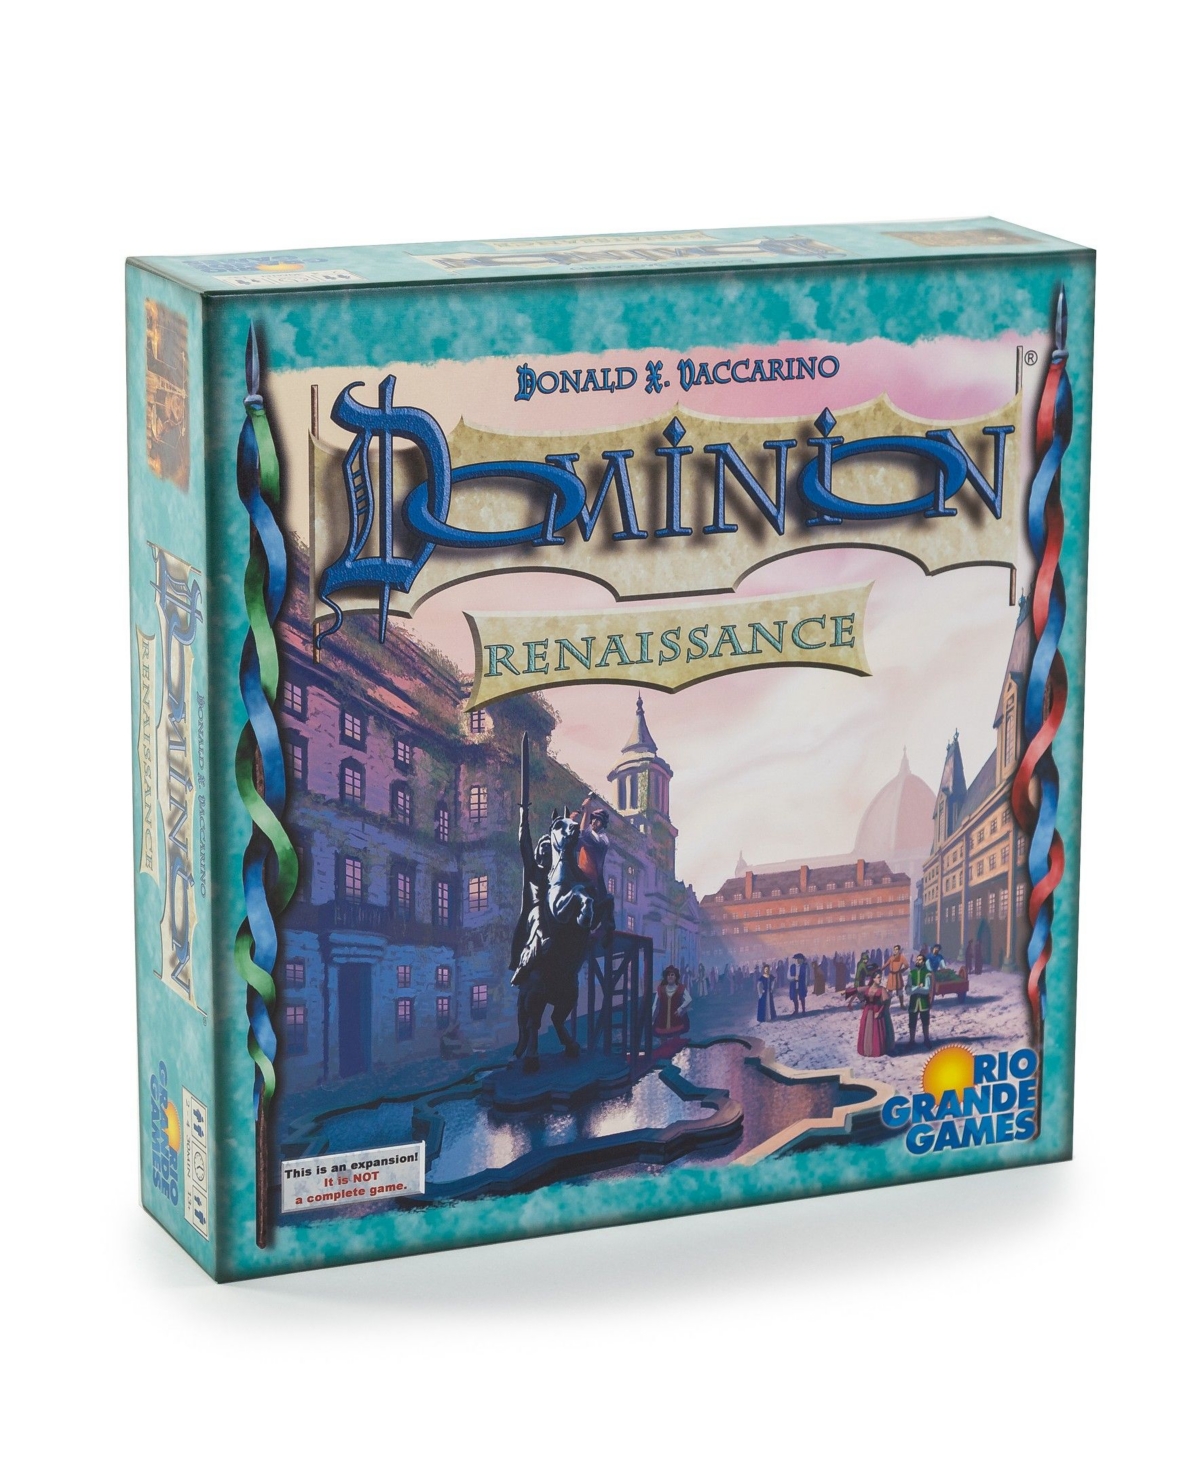 Masterpieces Puzzles Rio Grande Games Dominion In Multi